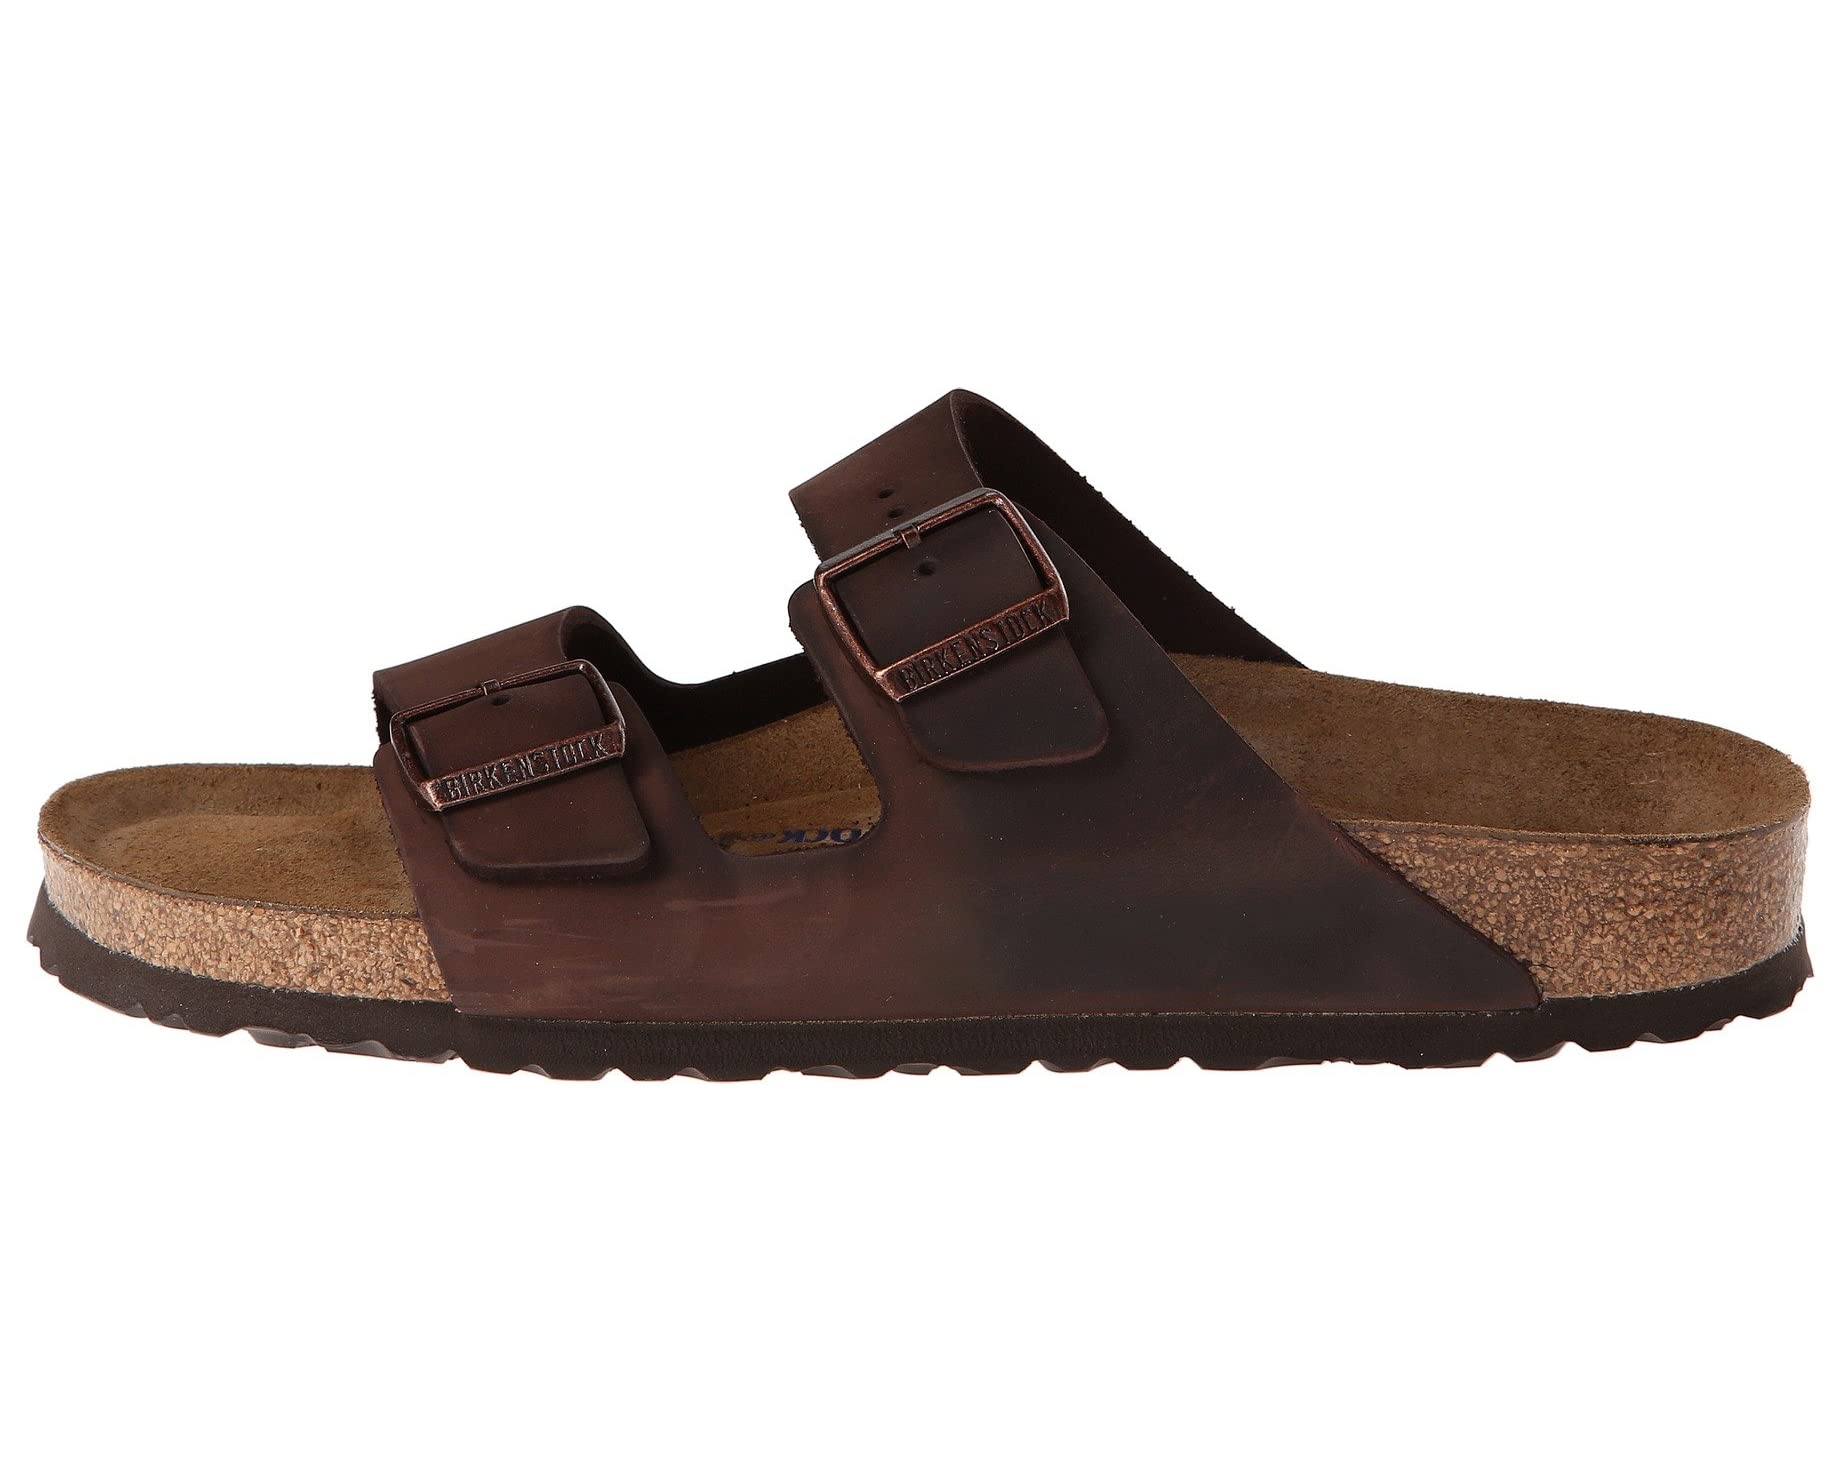 Сандалии Arizona Soft Footbed - Leather (Unisex) Birkenstock, кожа